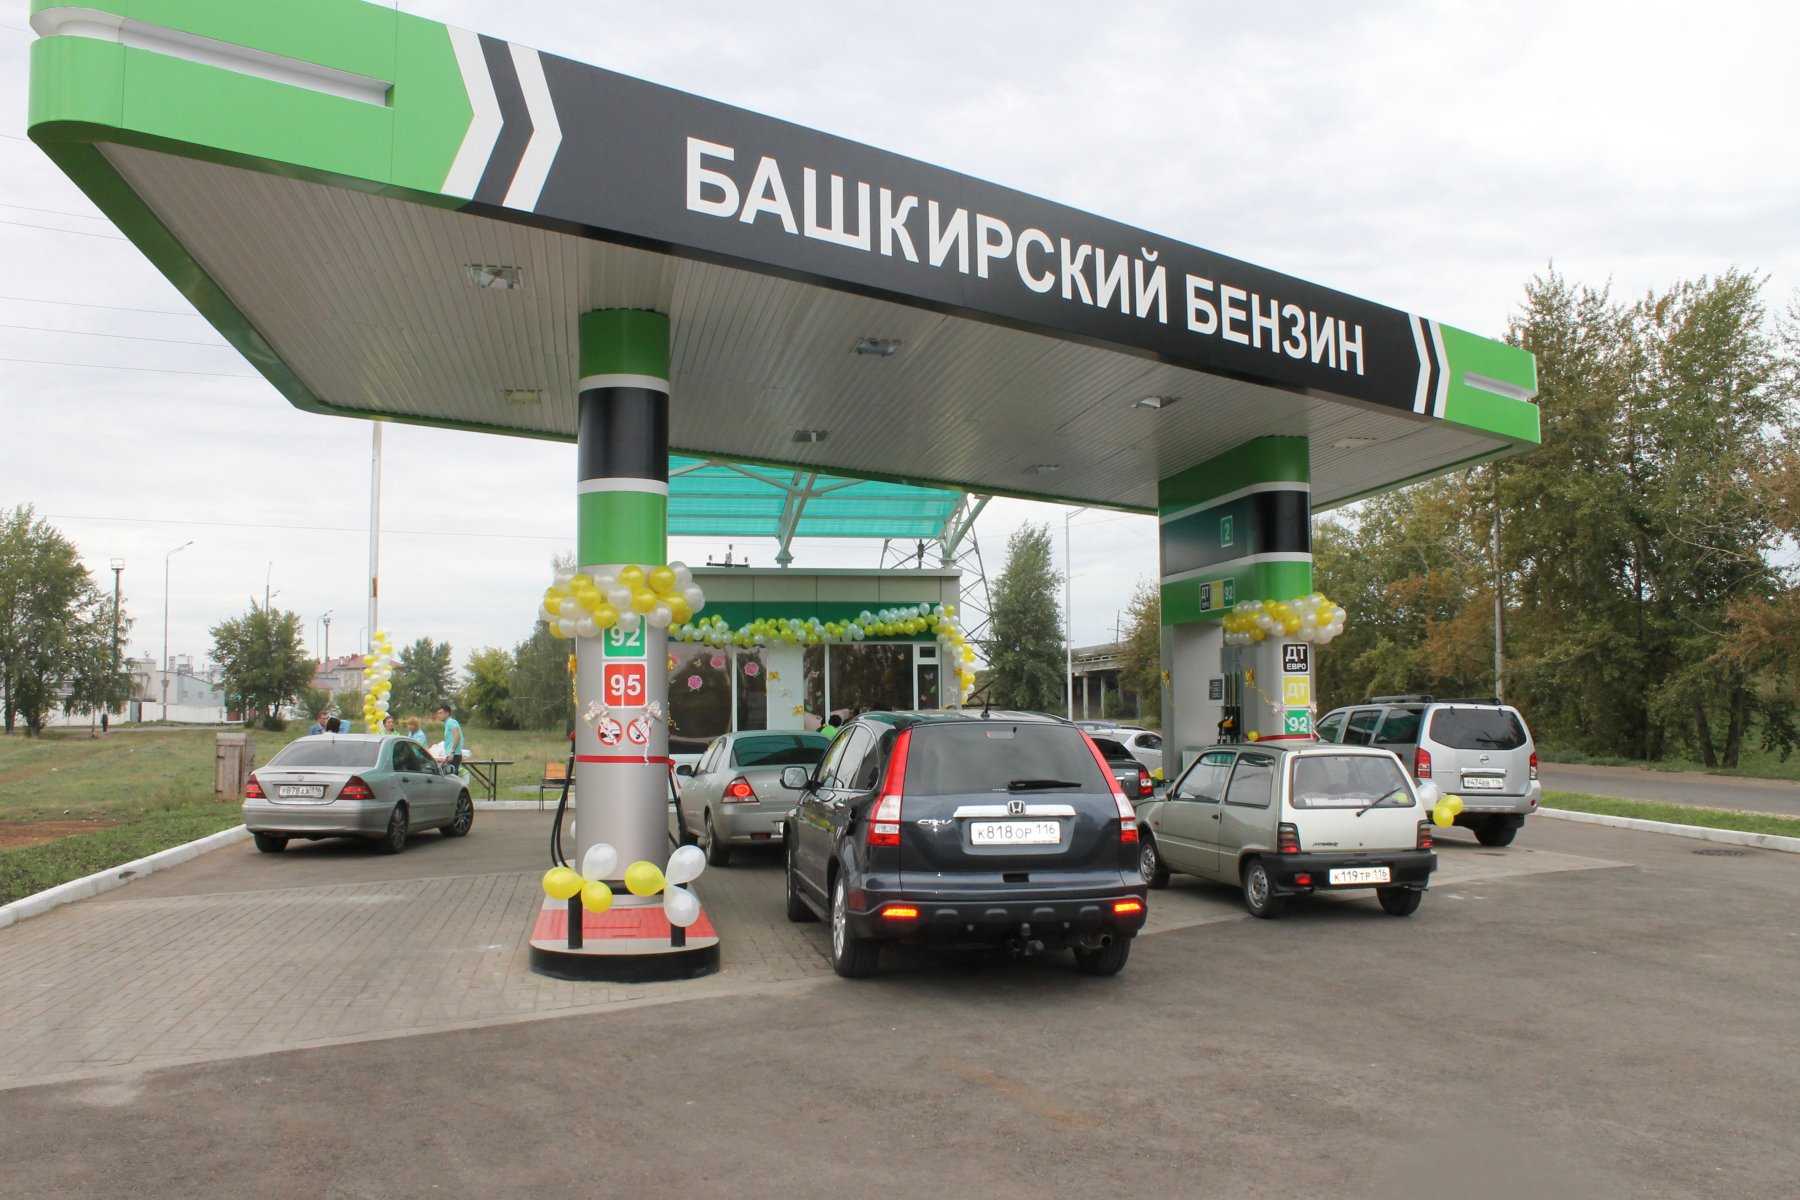 Башкирский бензин фото 1